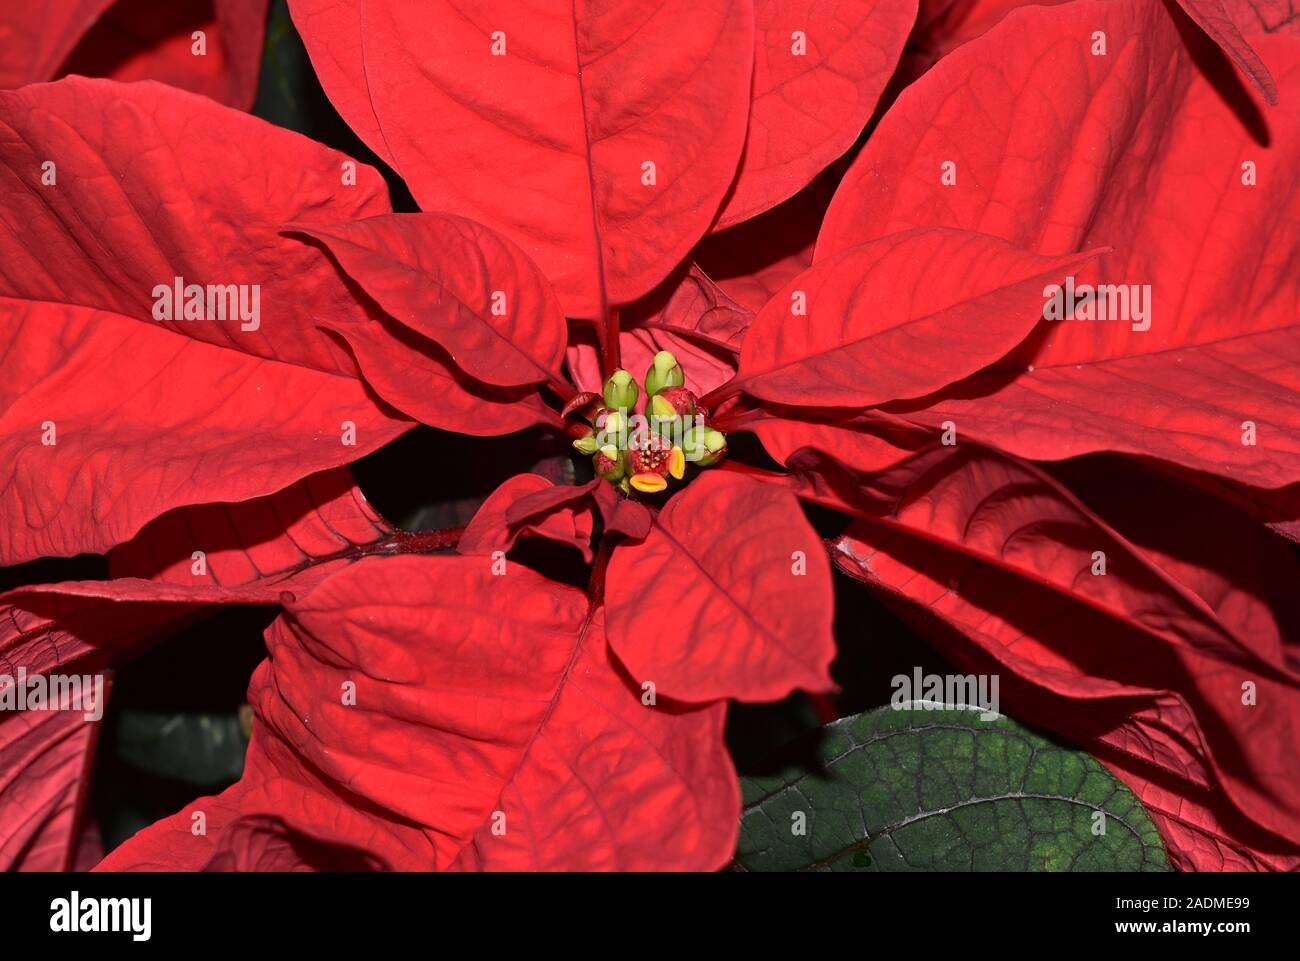 Poinsettia Plant Stock Photo